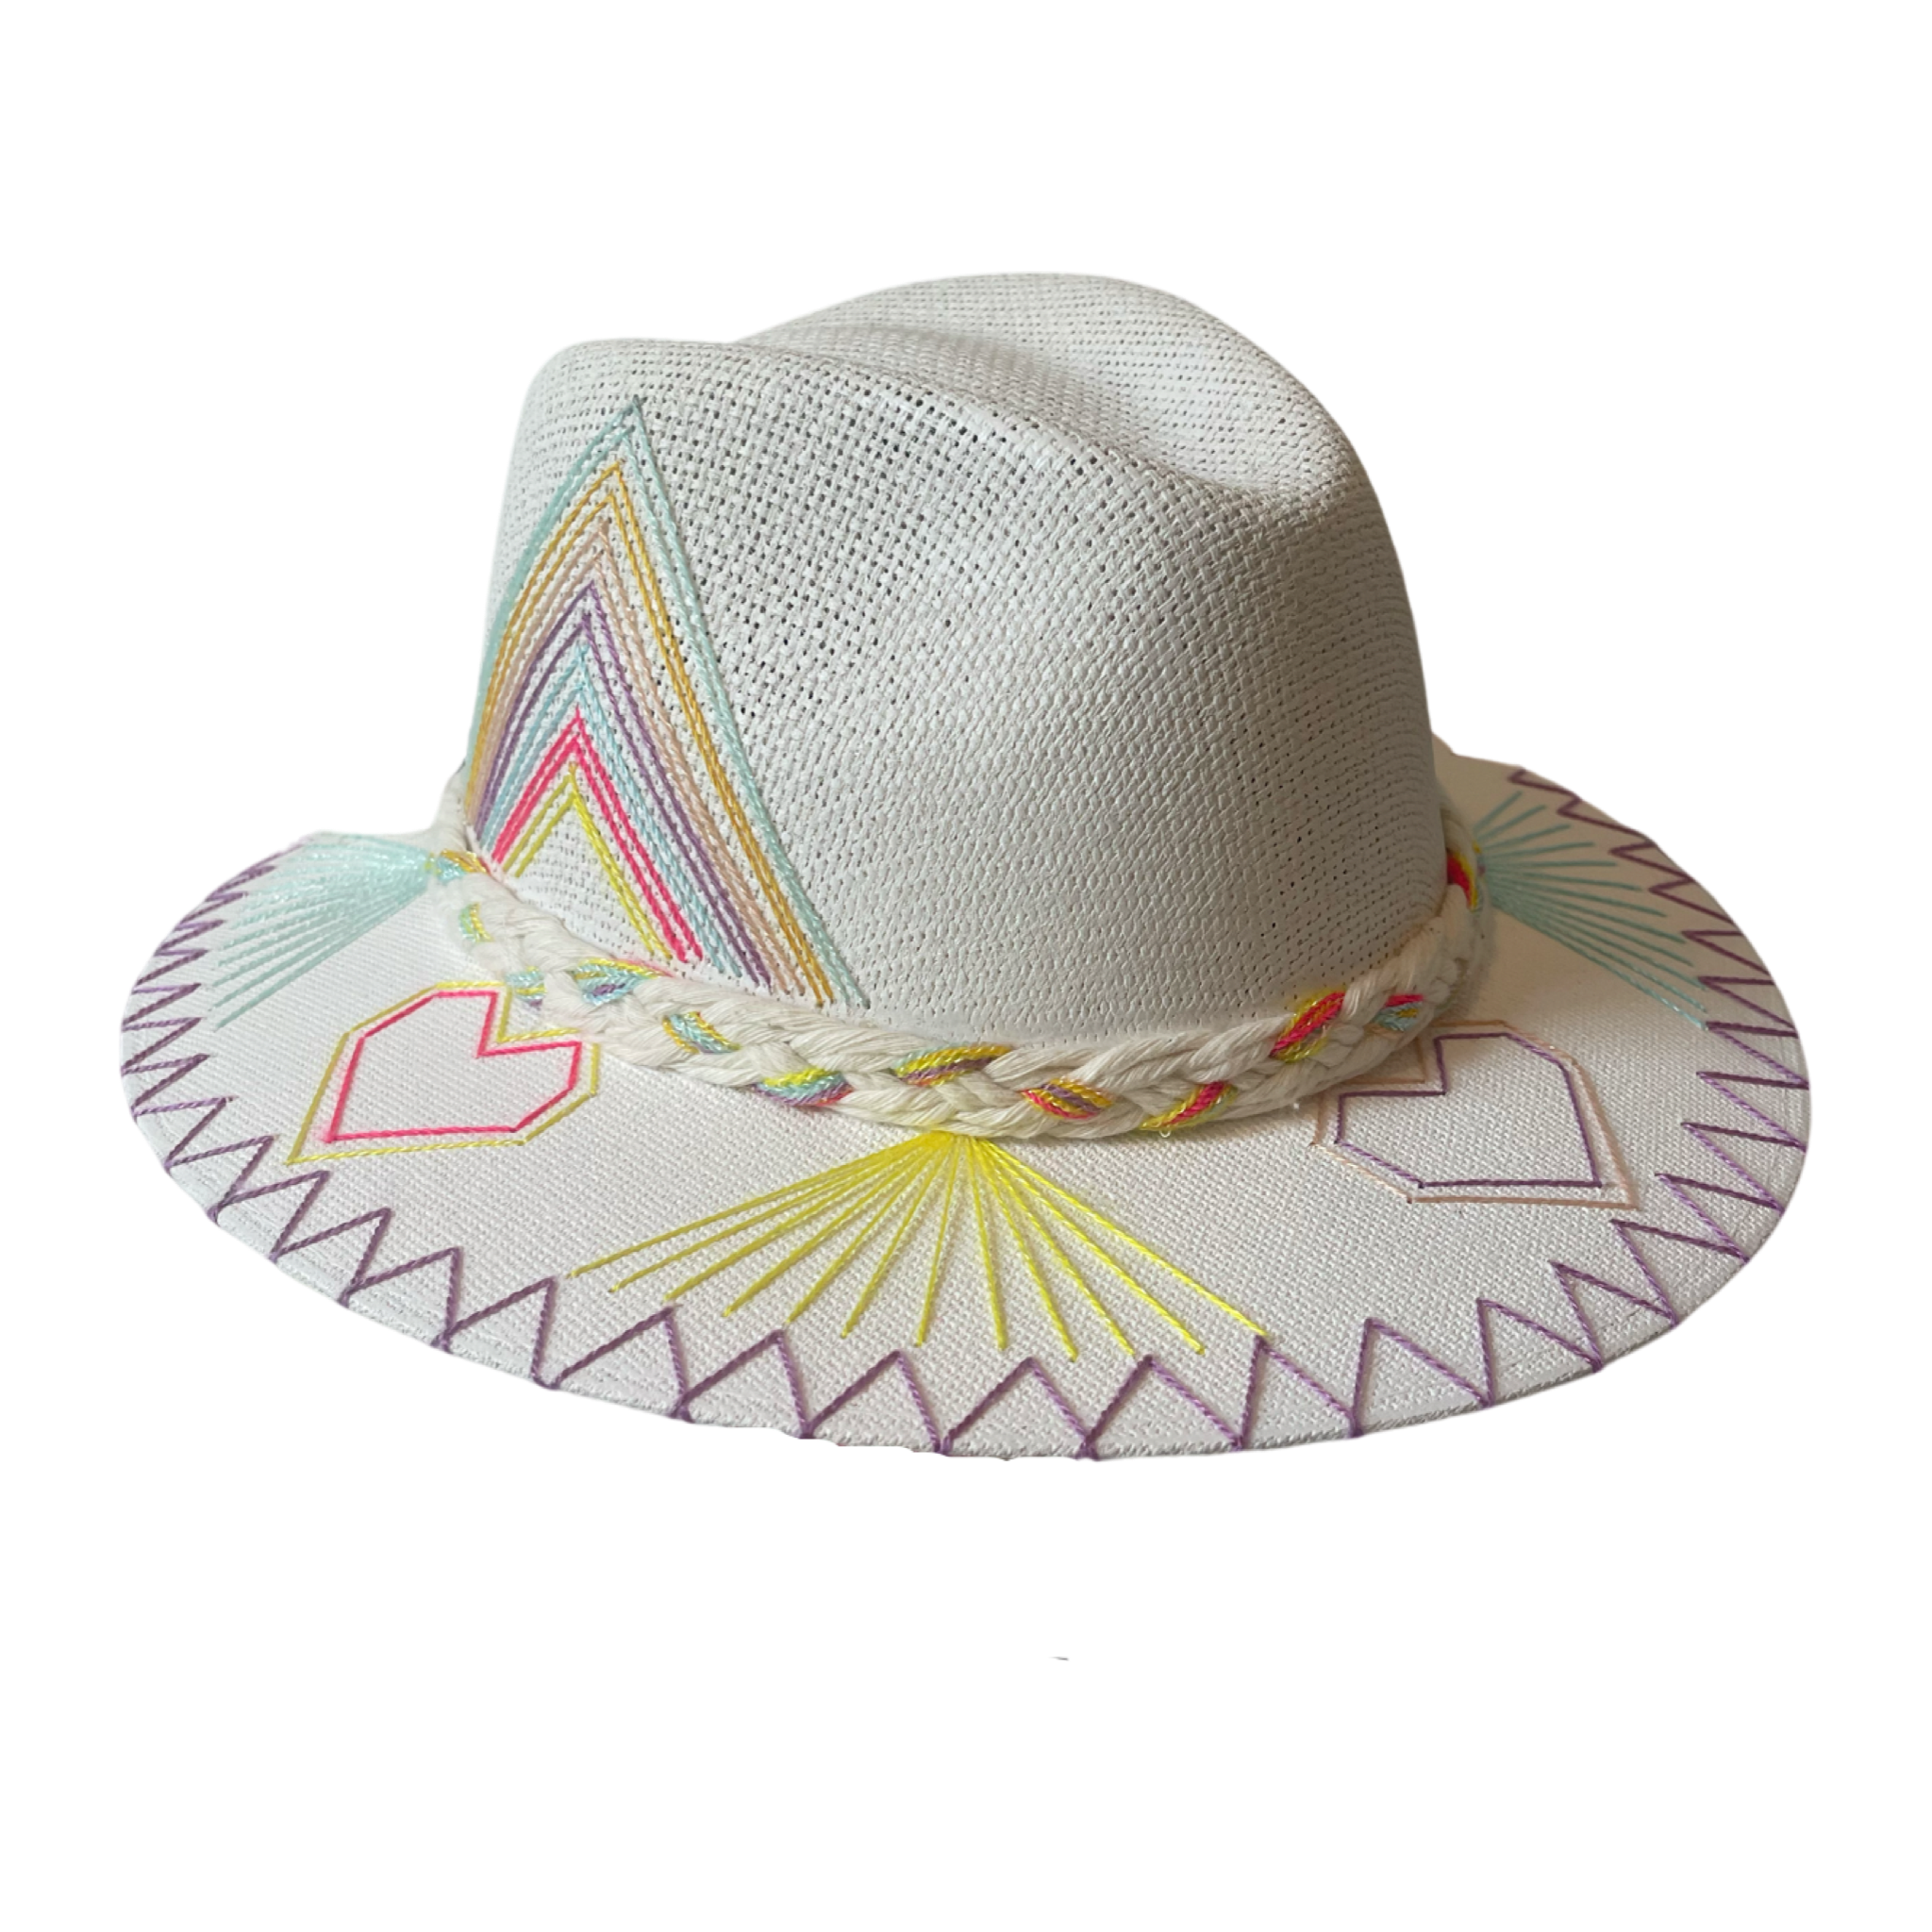 Exclusive Corazón Bebe Sunshine Hat by Corazon Playero - Preorder